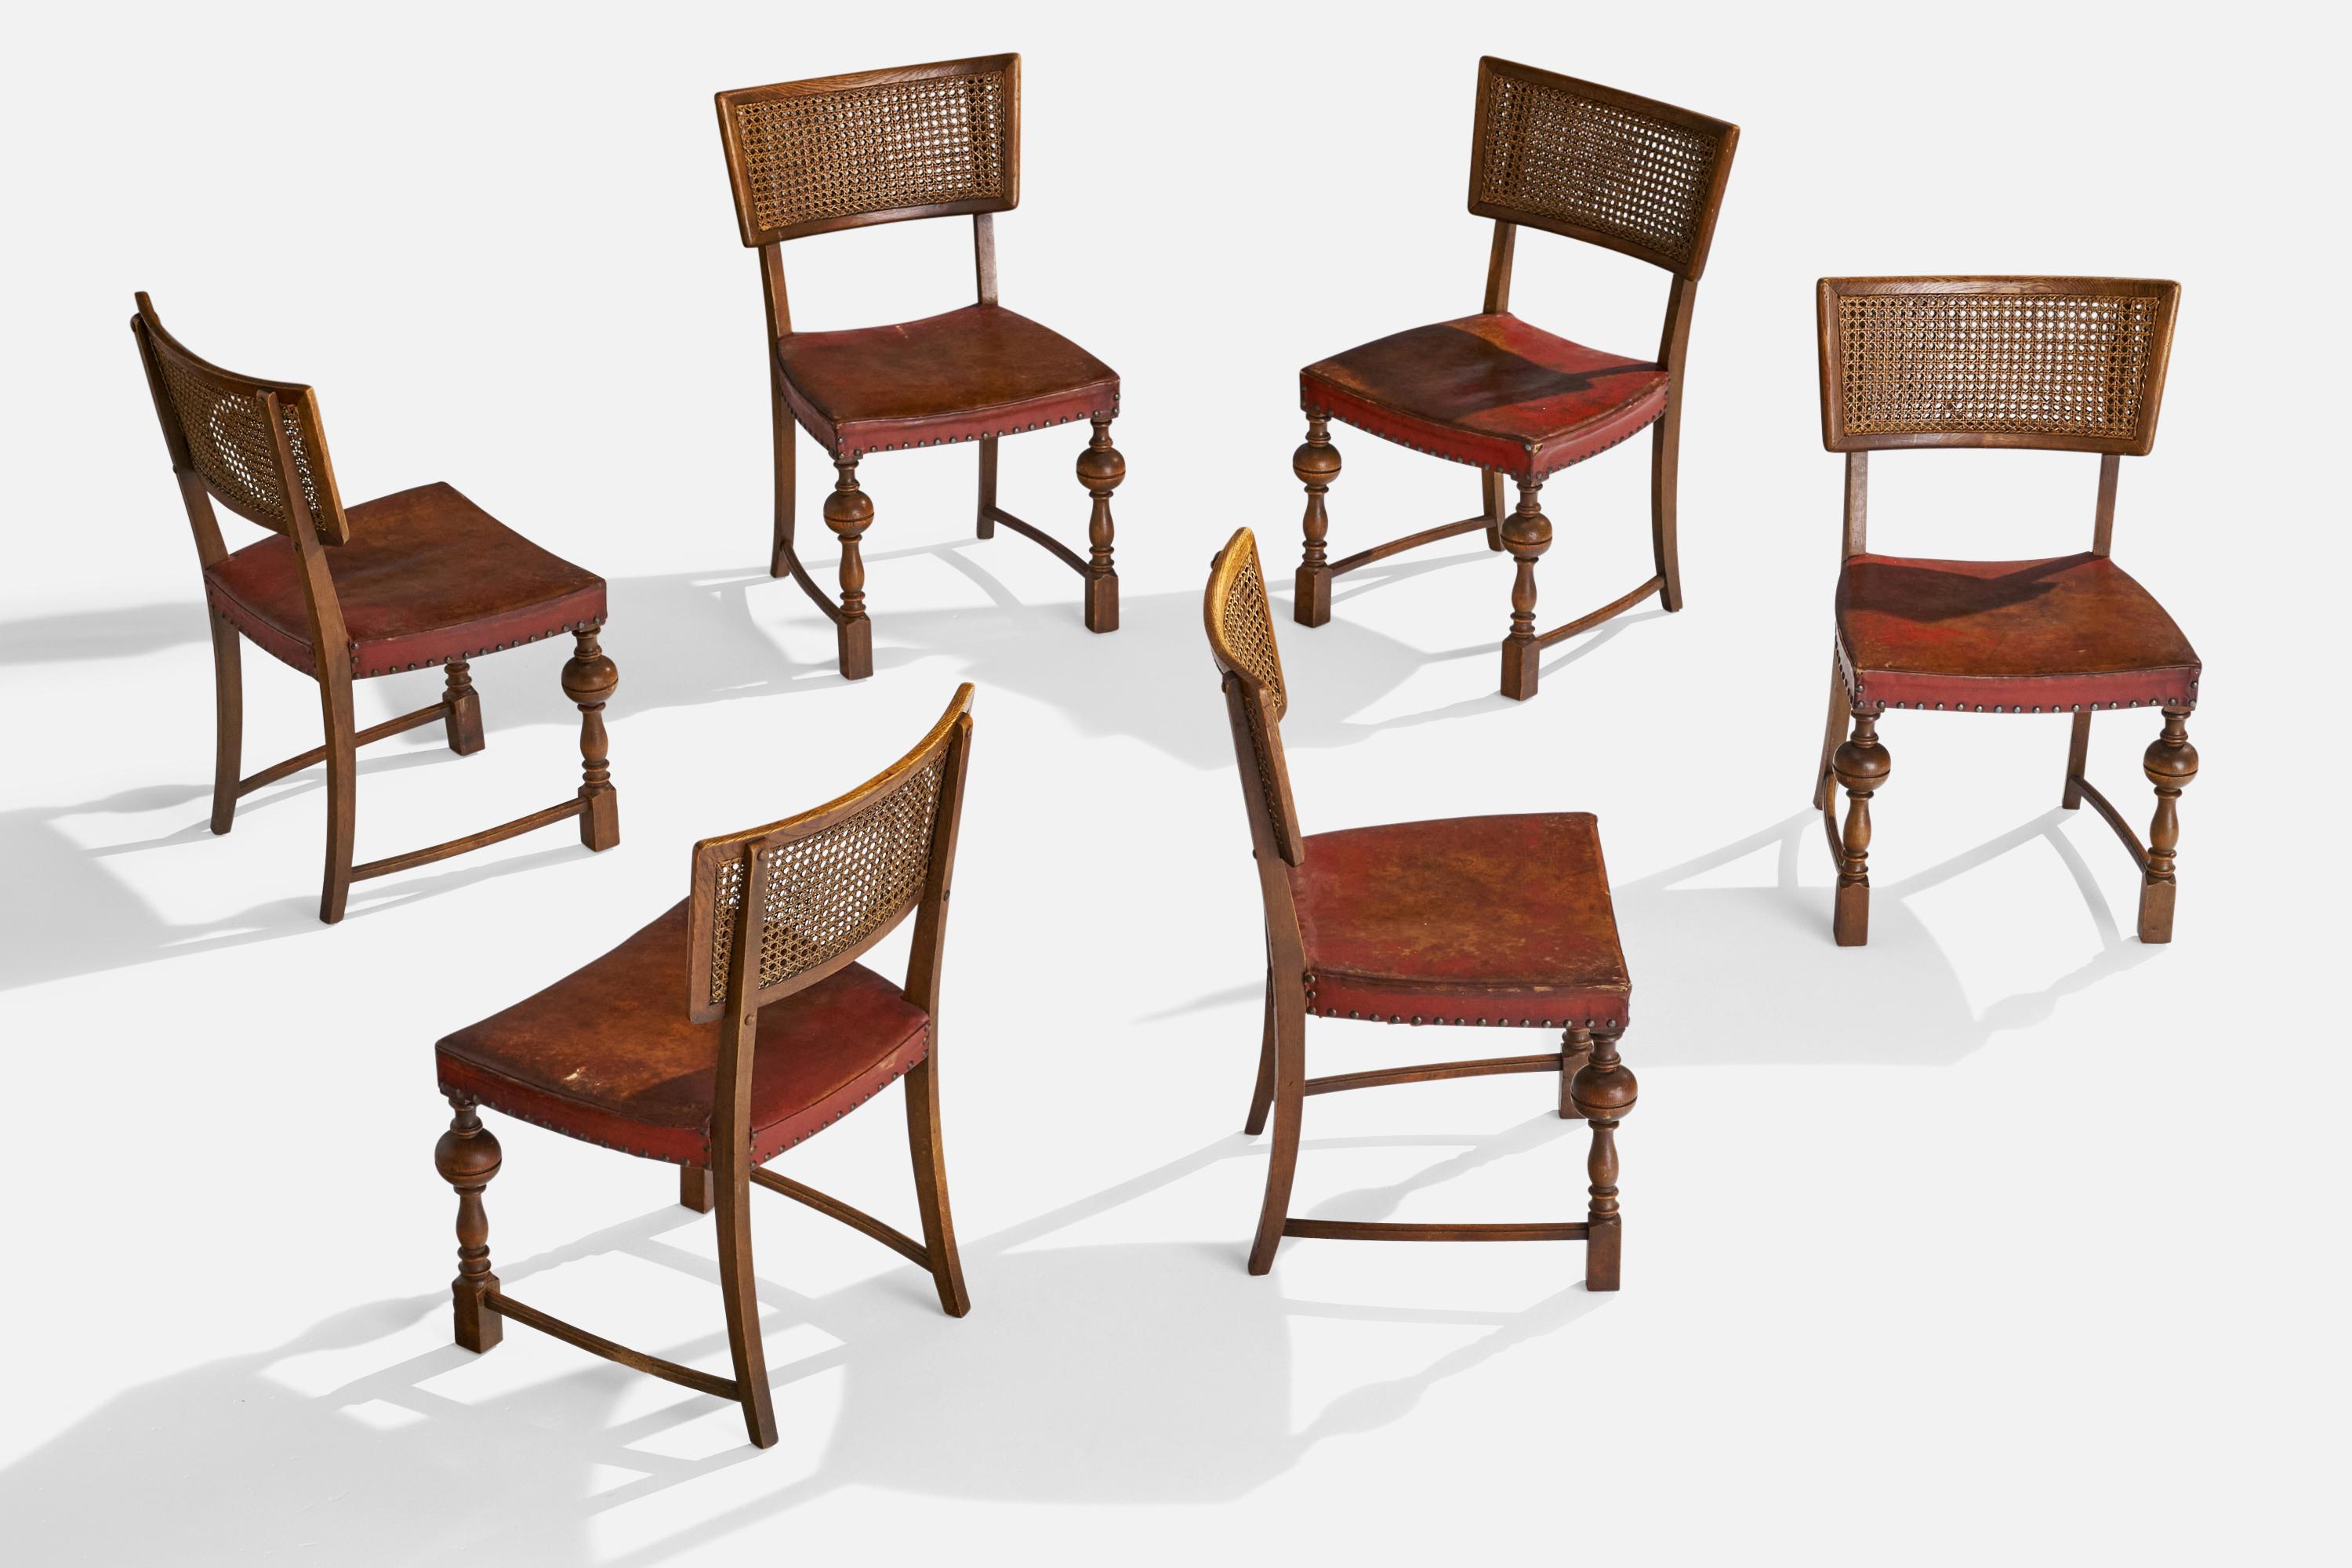 Ensemble de 6 chaises d'appoint ou de salle à manger en chêne, rotin et cuir rouge, conçues et fabriquées au Danemark dans les années 1930.

Hauteur du siège : 16.75